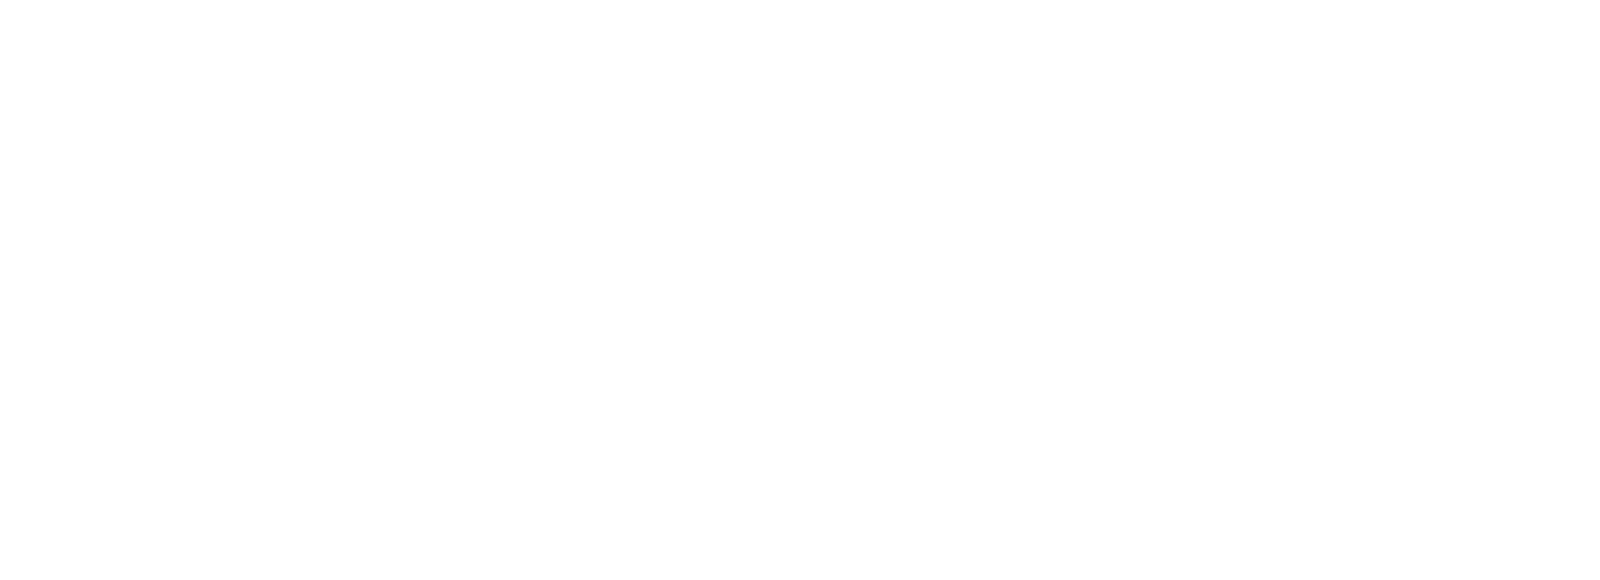 Sphere 3D logo large for dark backgrounds (transparent PNG)